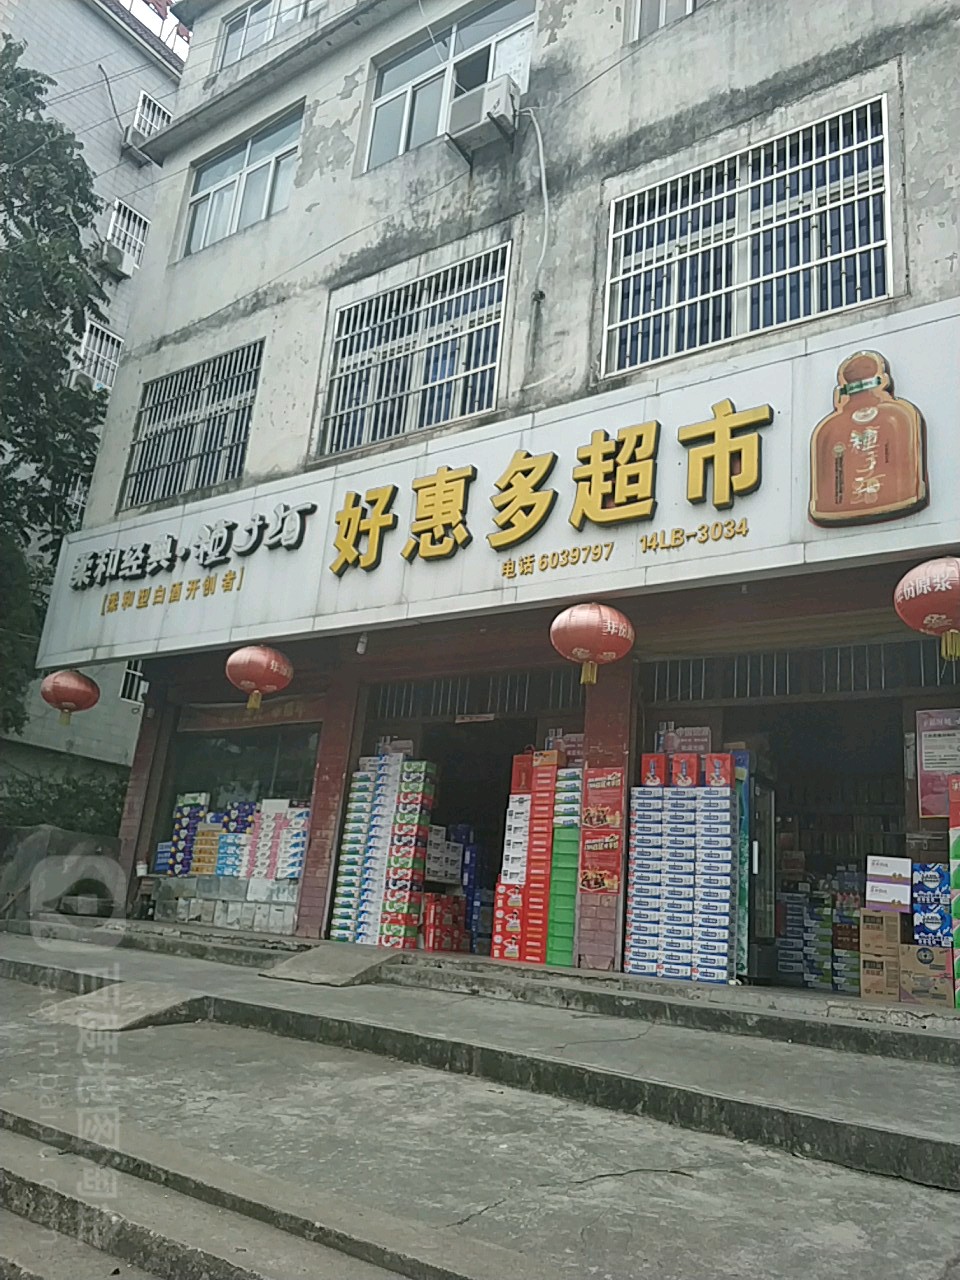 好惠多超市(宿泗路)